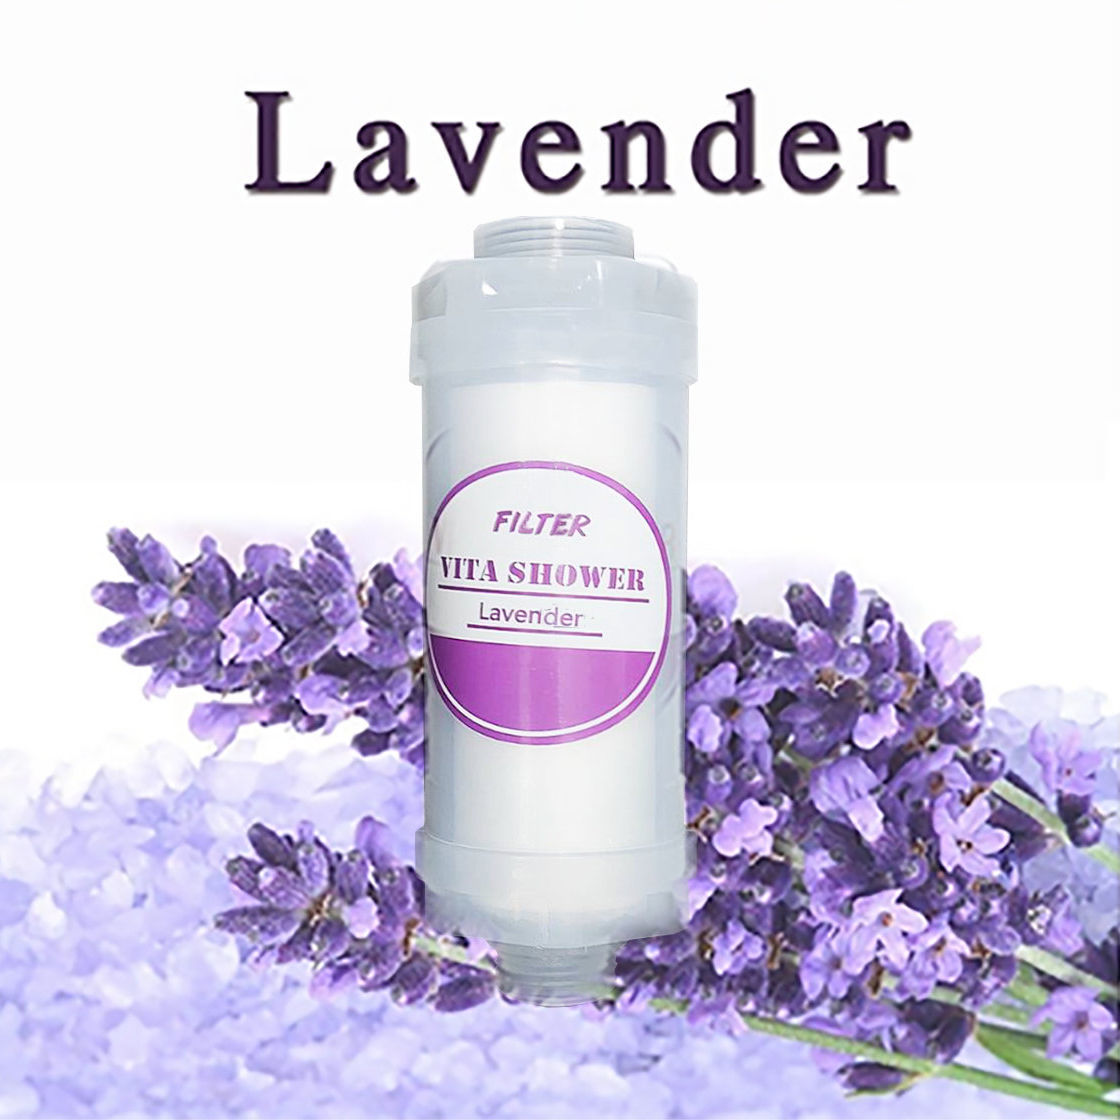 ตัวกรองอาบน้ำกลิ่น Lavender  จาก SISTEMA มีส่วนผสมของวิตามิน  ช่วยเพิ่มความชุ่มชื้นให้แก่ผิว พร้อมช่วยลดปริมาณคลอรีนในน้ำ ให้กลิ่นหอมสดชื่นระหว่างอาบน้ำ สามารถใช้ได้กับเครื่องทำน้ำอุ่น และฝักบัวปกติ 